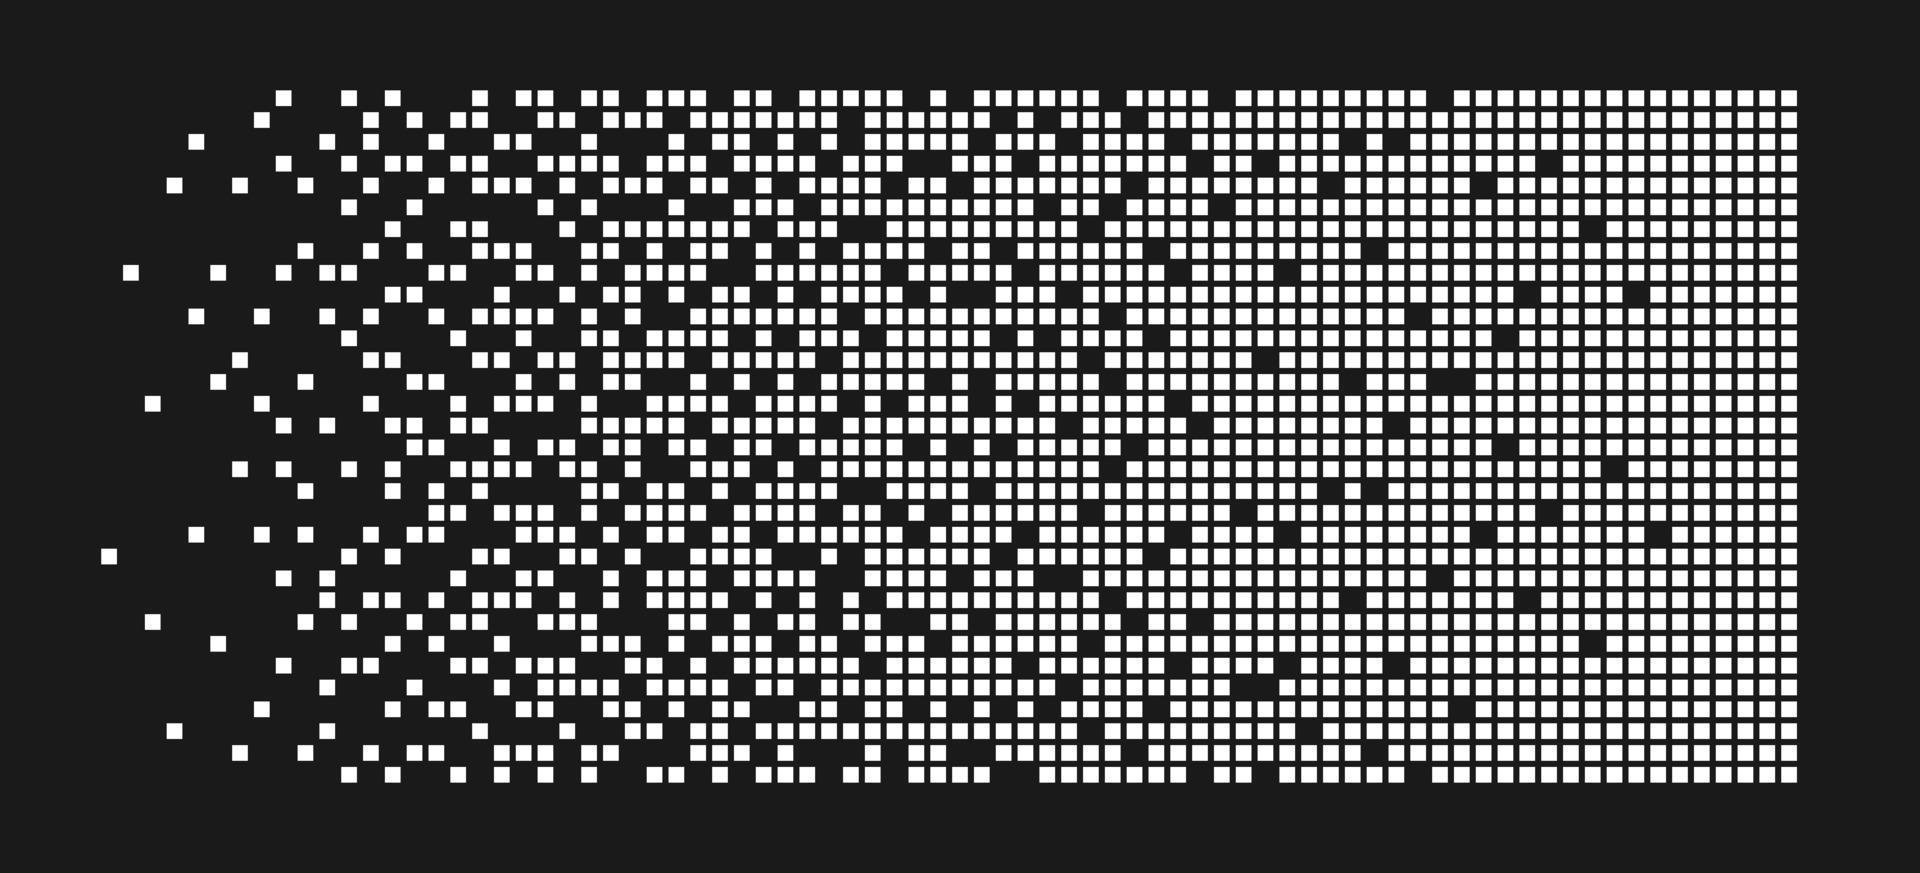 Hintergrund der Pixelauflösung. Zerfallseffekt. verteiltes gepunktetes Muster. Konzept der Auflösung. abstrakte Pixelmosaikstruktur mit einfachen quadratischen Partikeln. Vektorillustration auf schwarzem Hintergrund vektor